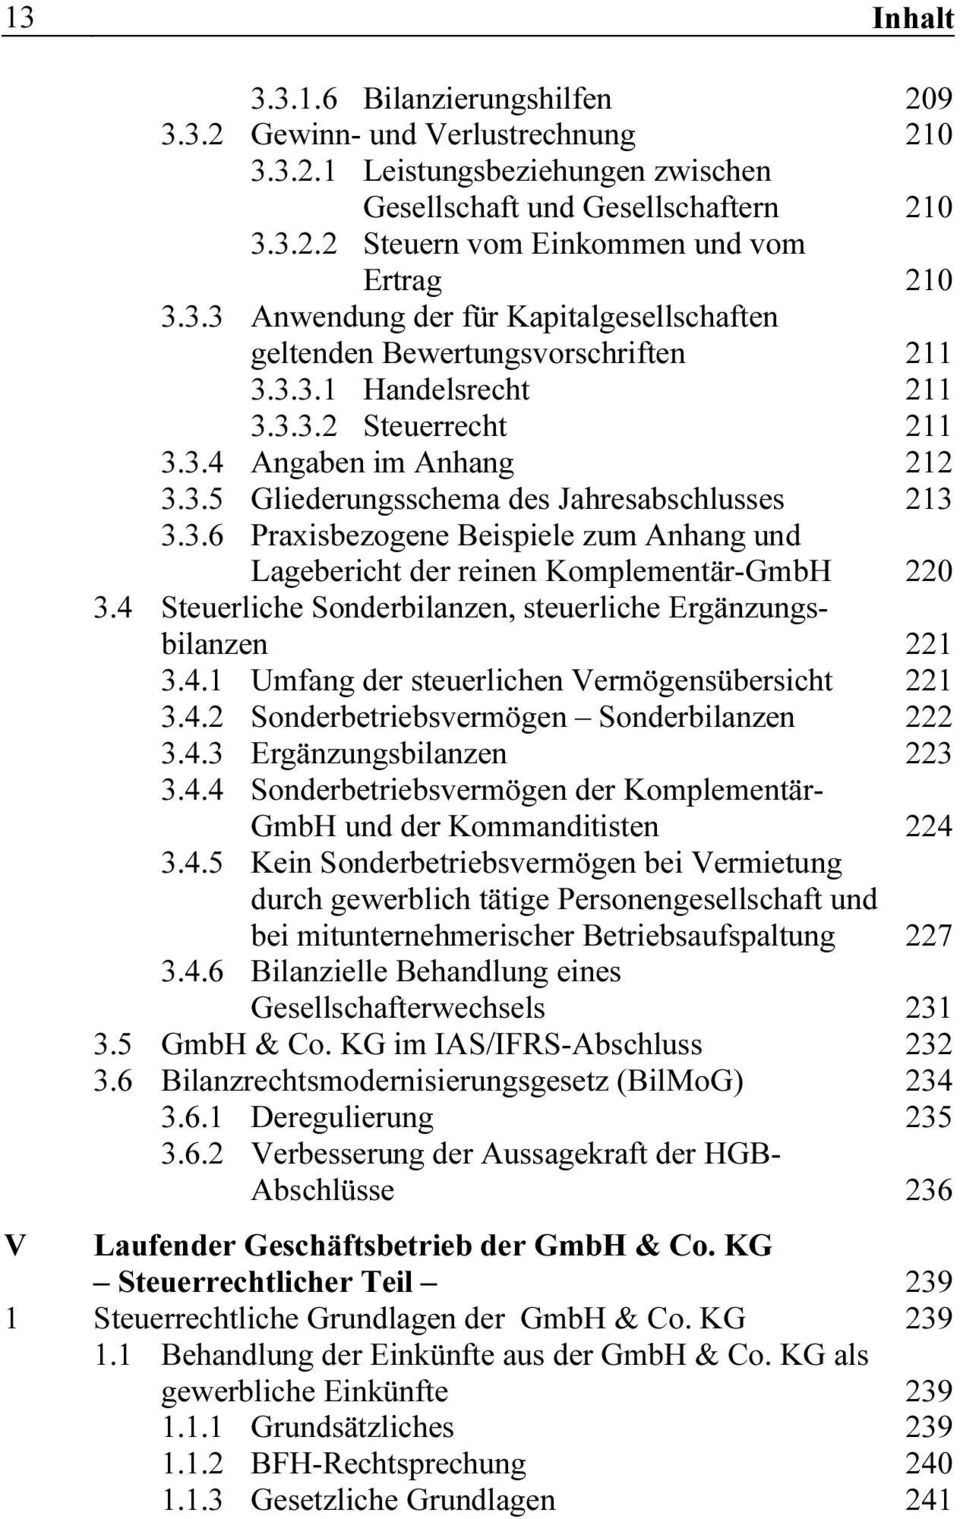 3.6 Praxisbezogene Beispiele zum Anhang und Lagebericht der reinen Komplementär-GmbH 220 3.4 Steuerliche Sonderbilanzen, steuerliche Ergänzungsbilanzen 221 3.4.1 Umfang der steuerlichen Vermögensübersicht 221 3.